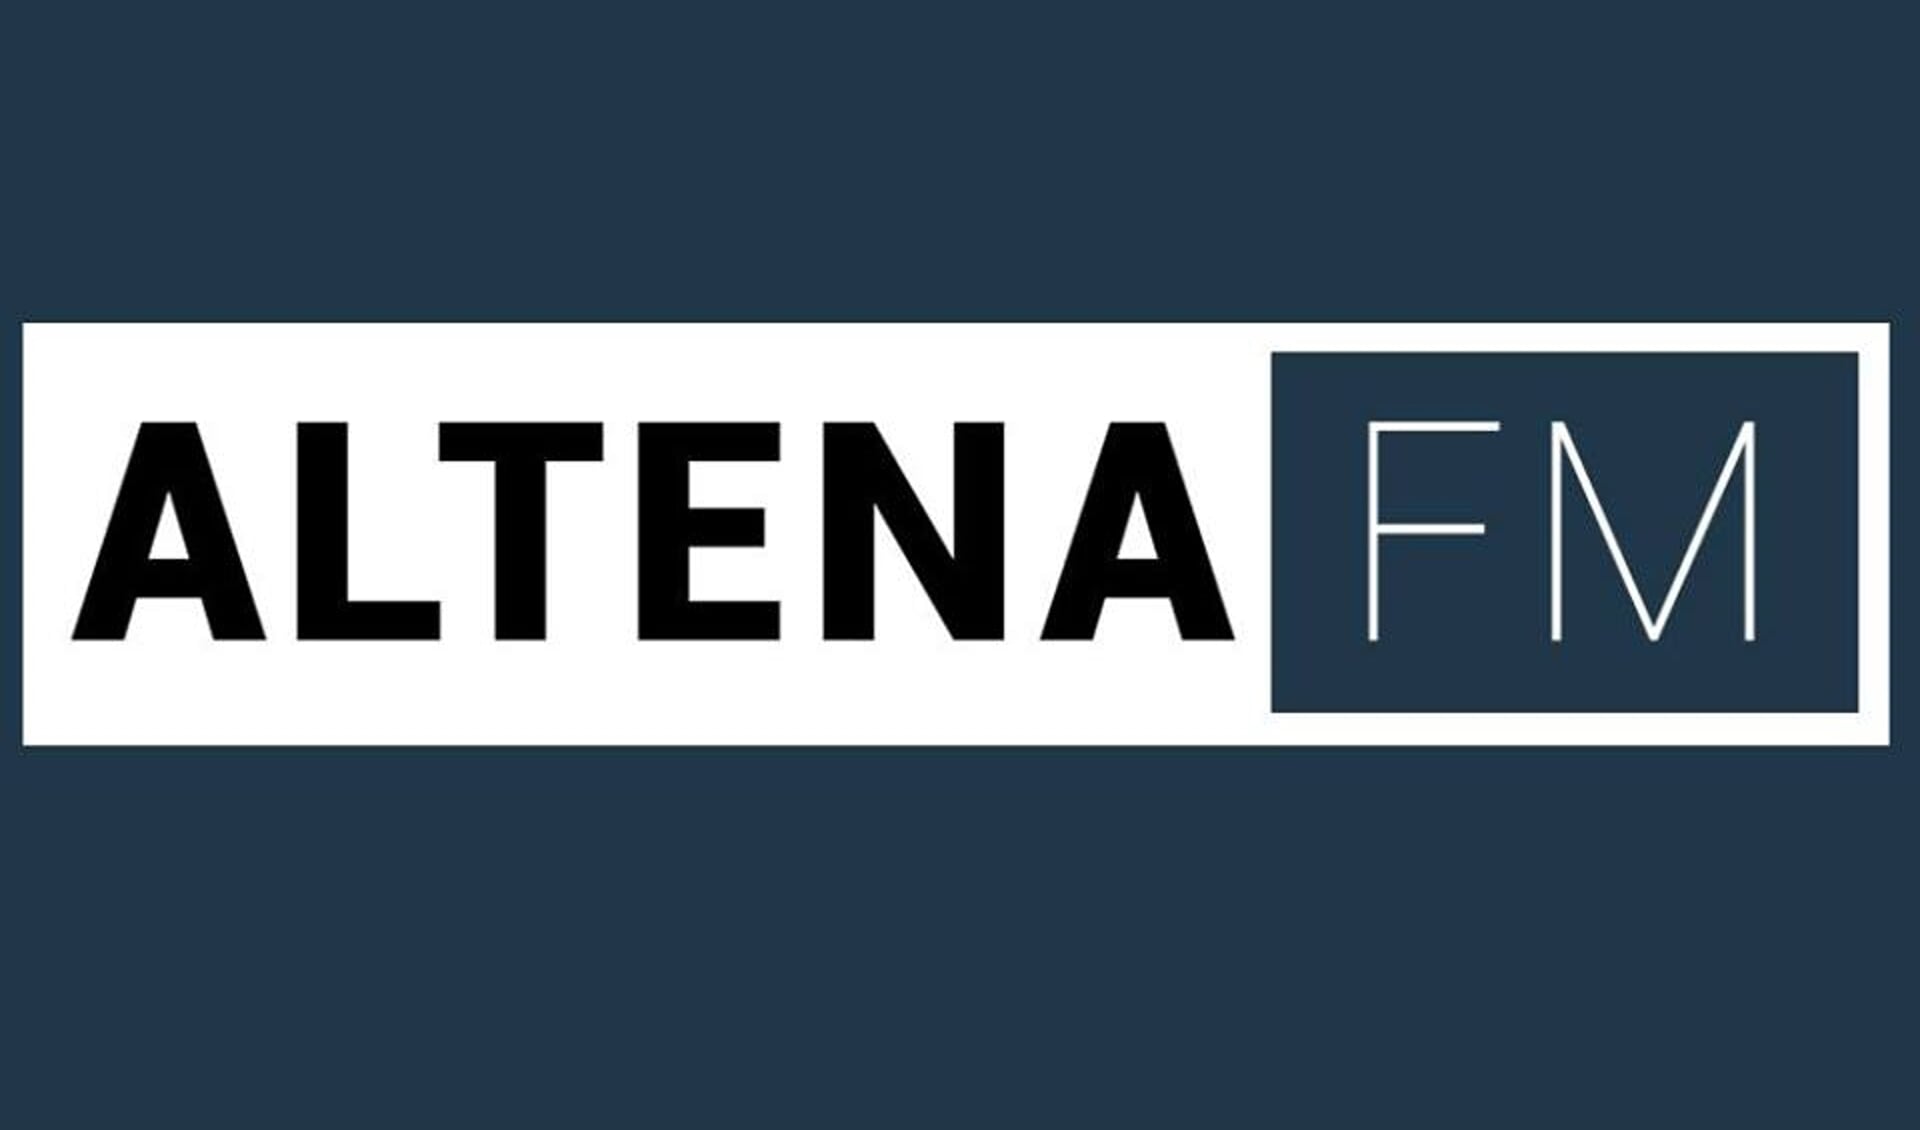 Het logo van Altena FM.